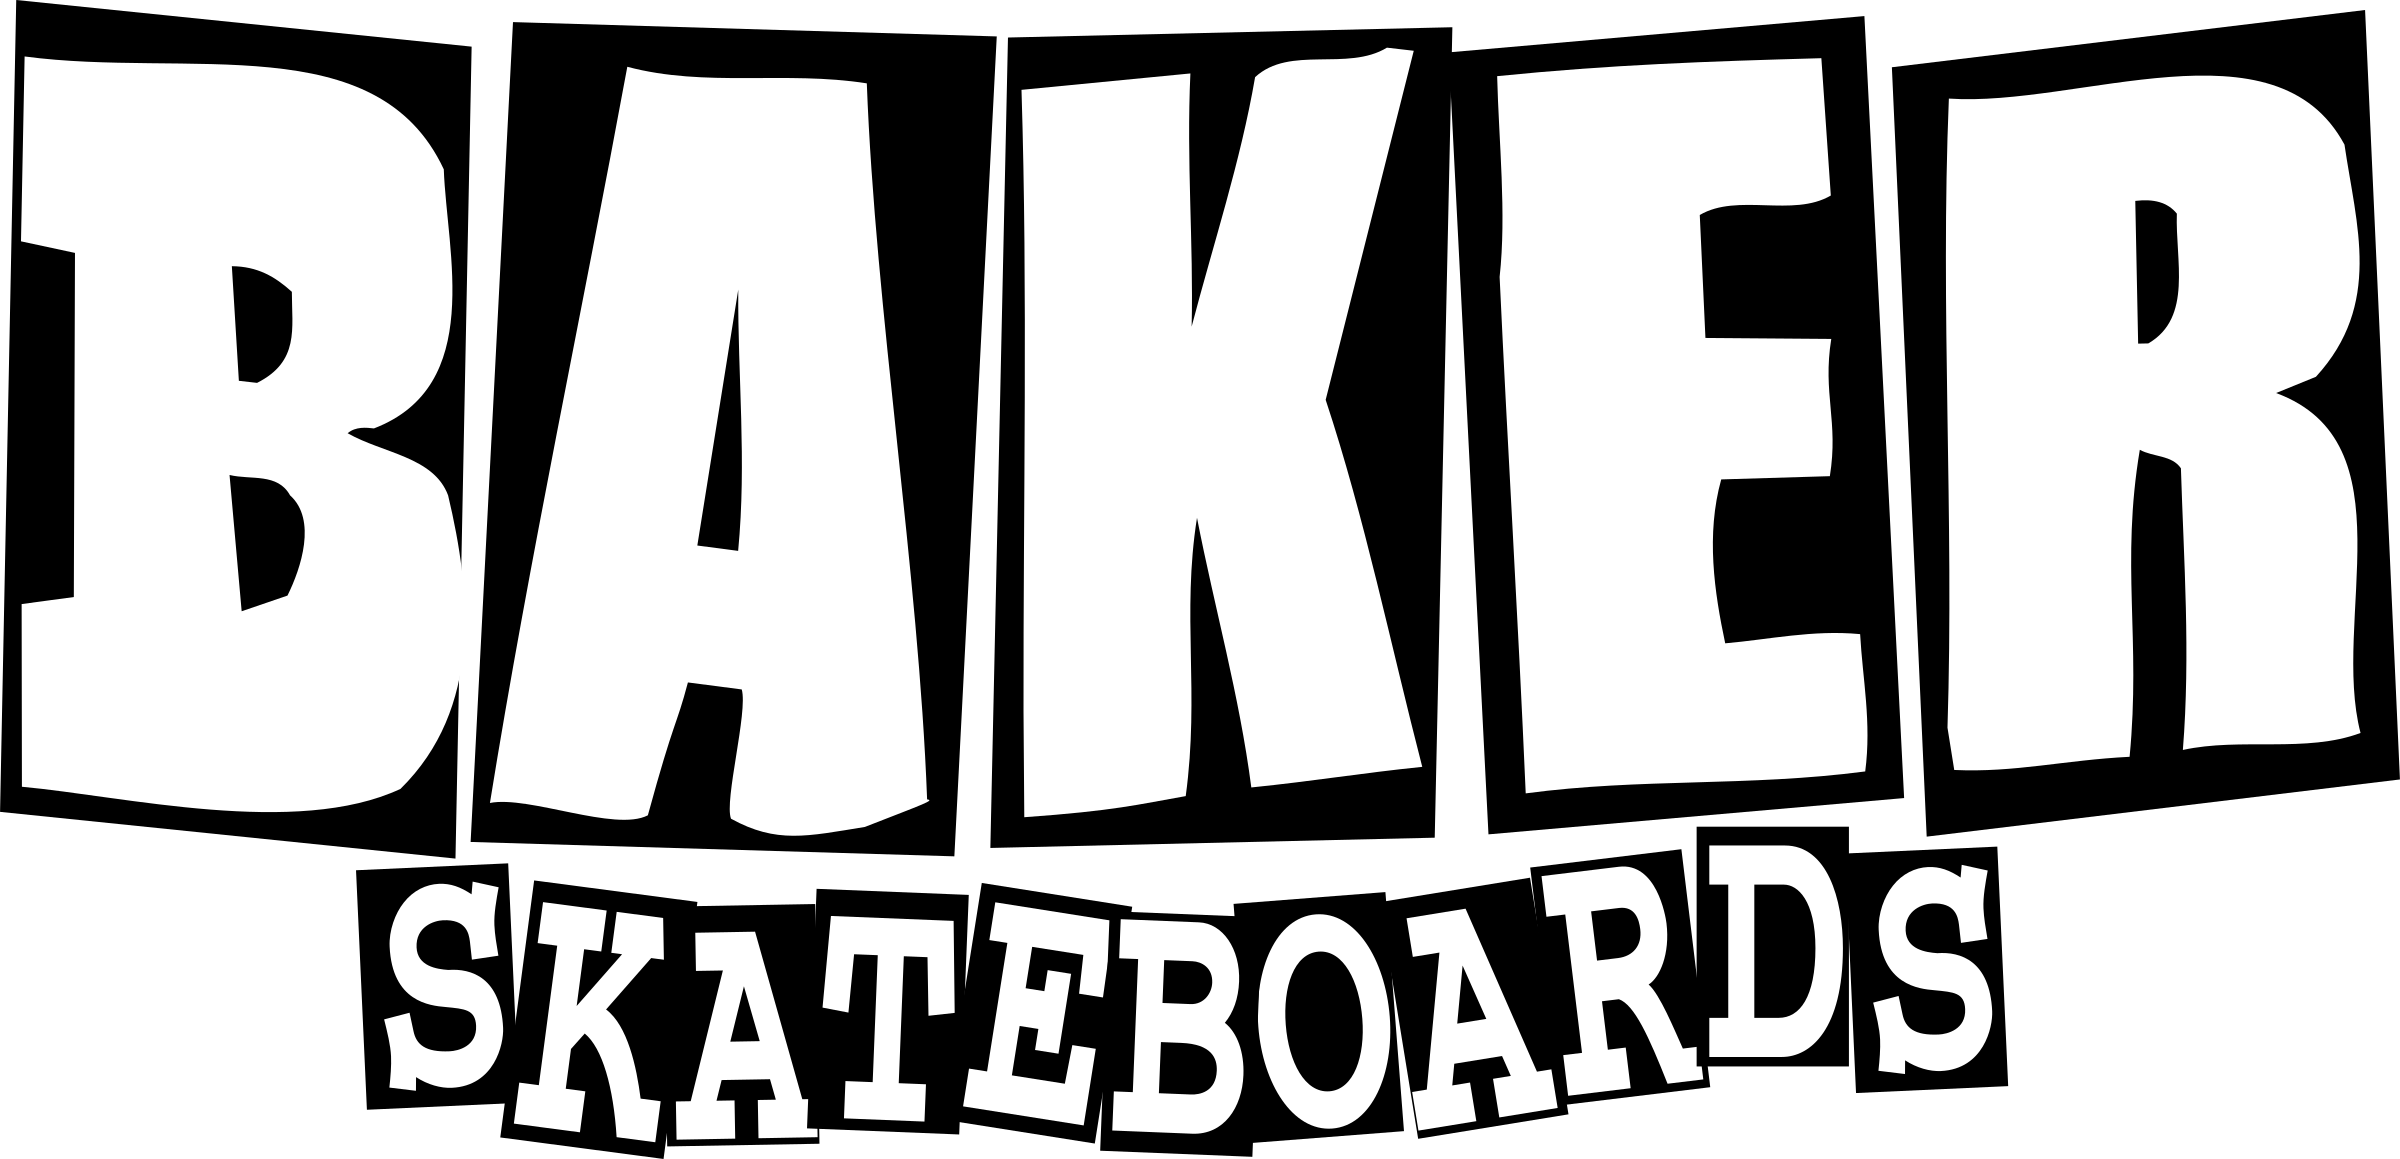 Jpg Transparent Download Skateboard Transparent Baker - Baker Skateboards Transparent (2400x1159), Png Download